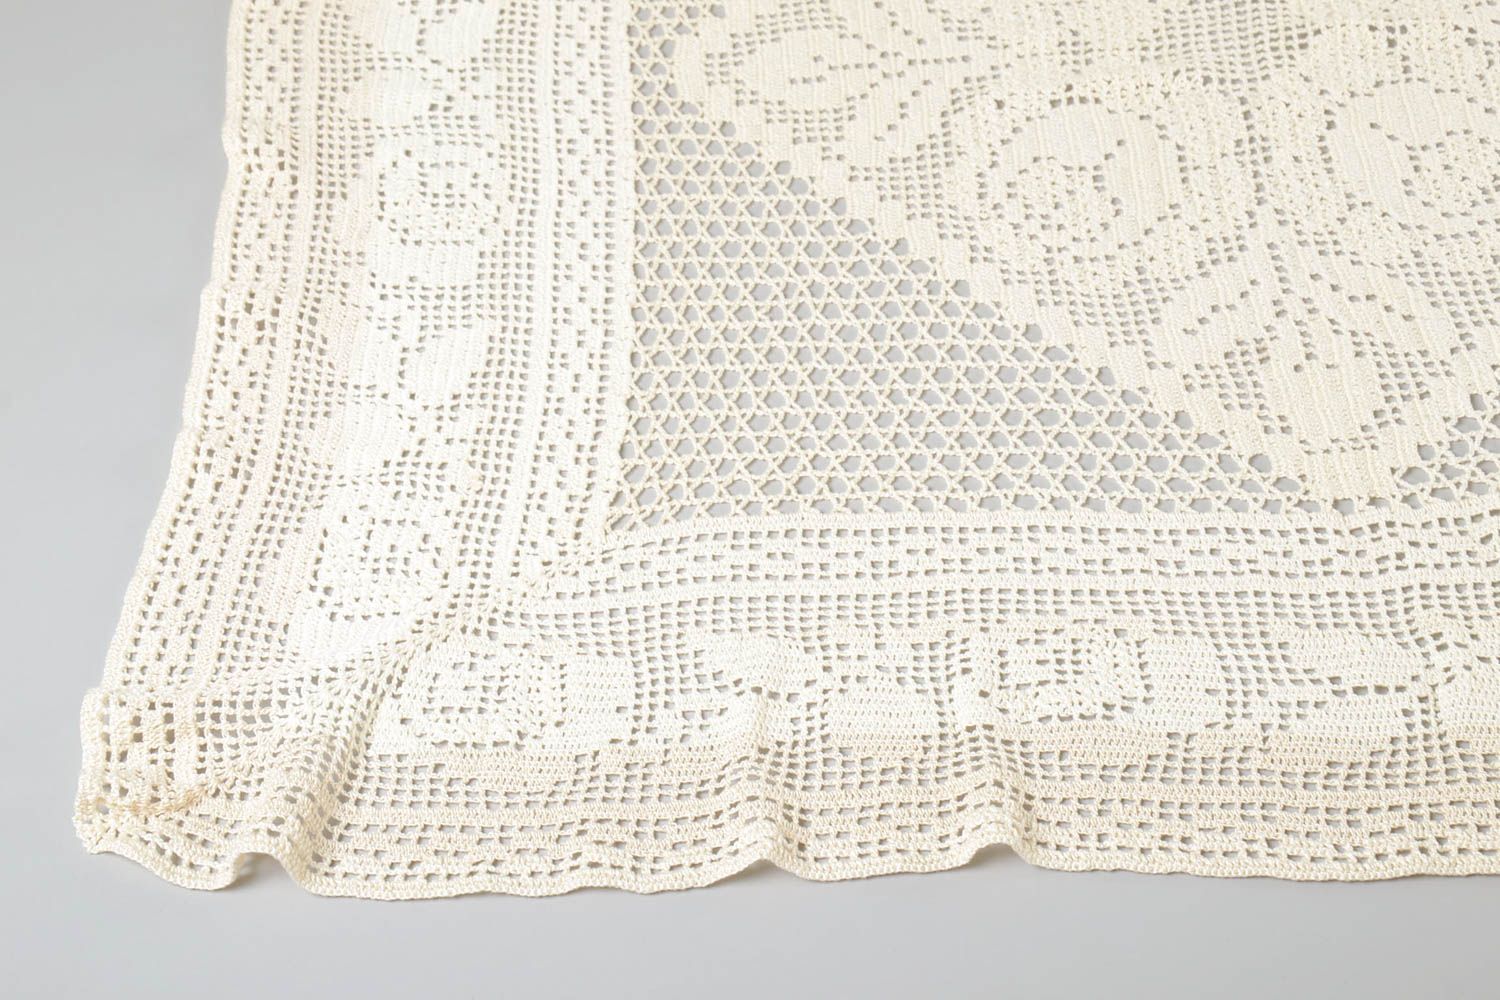 Handmade crocheted tablecloth unique designer textile kitchen interior decor photo 1